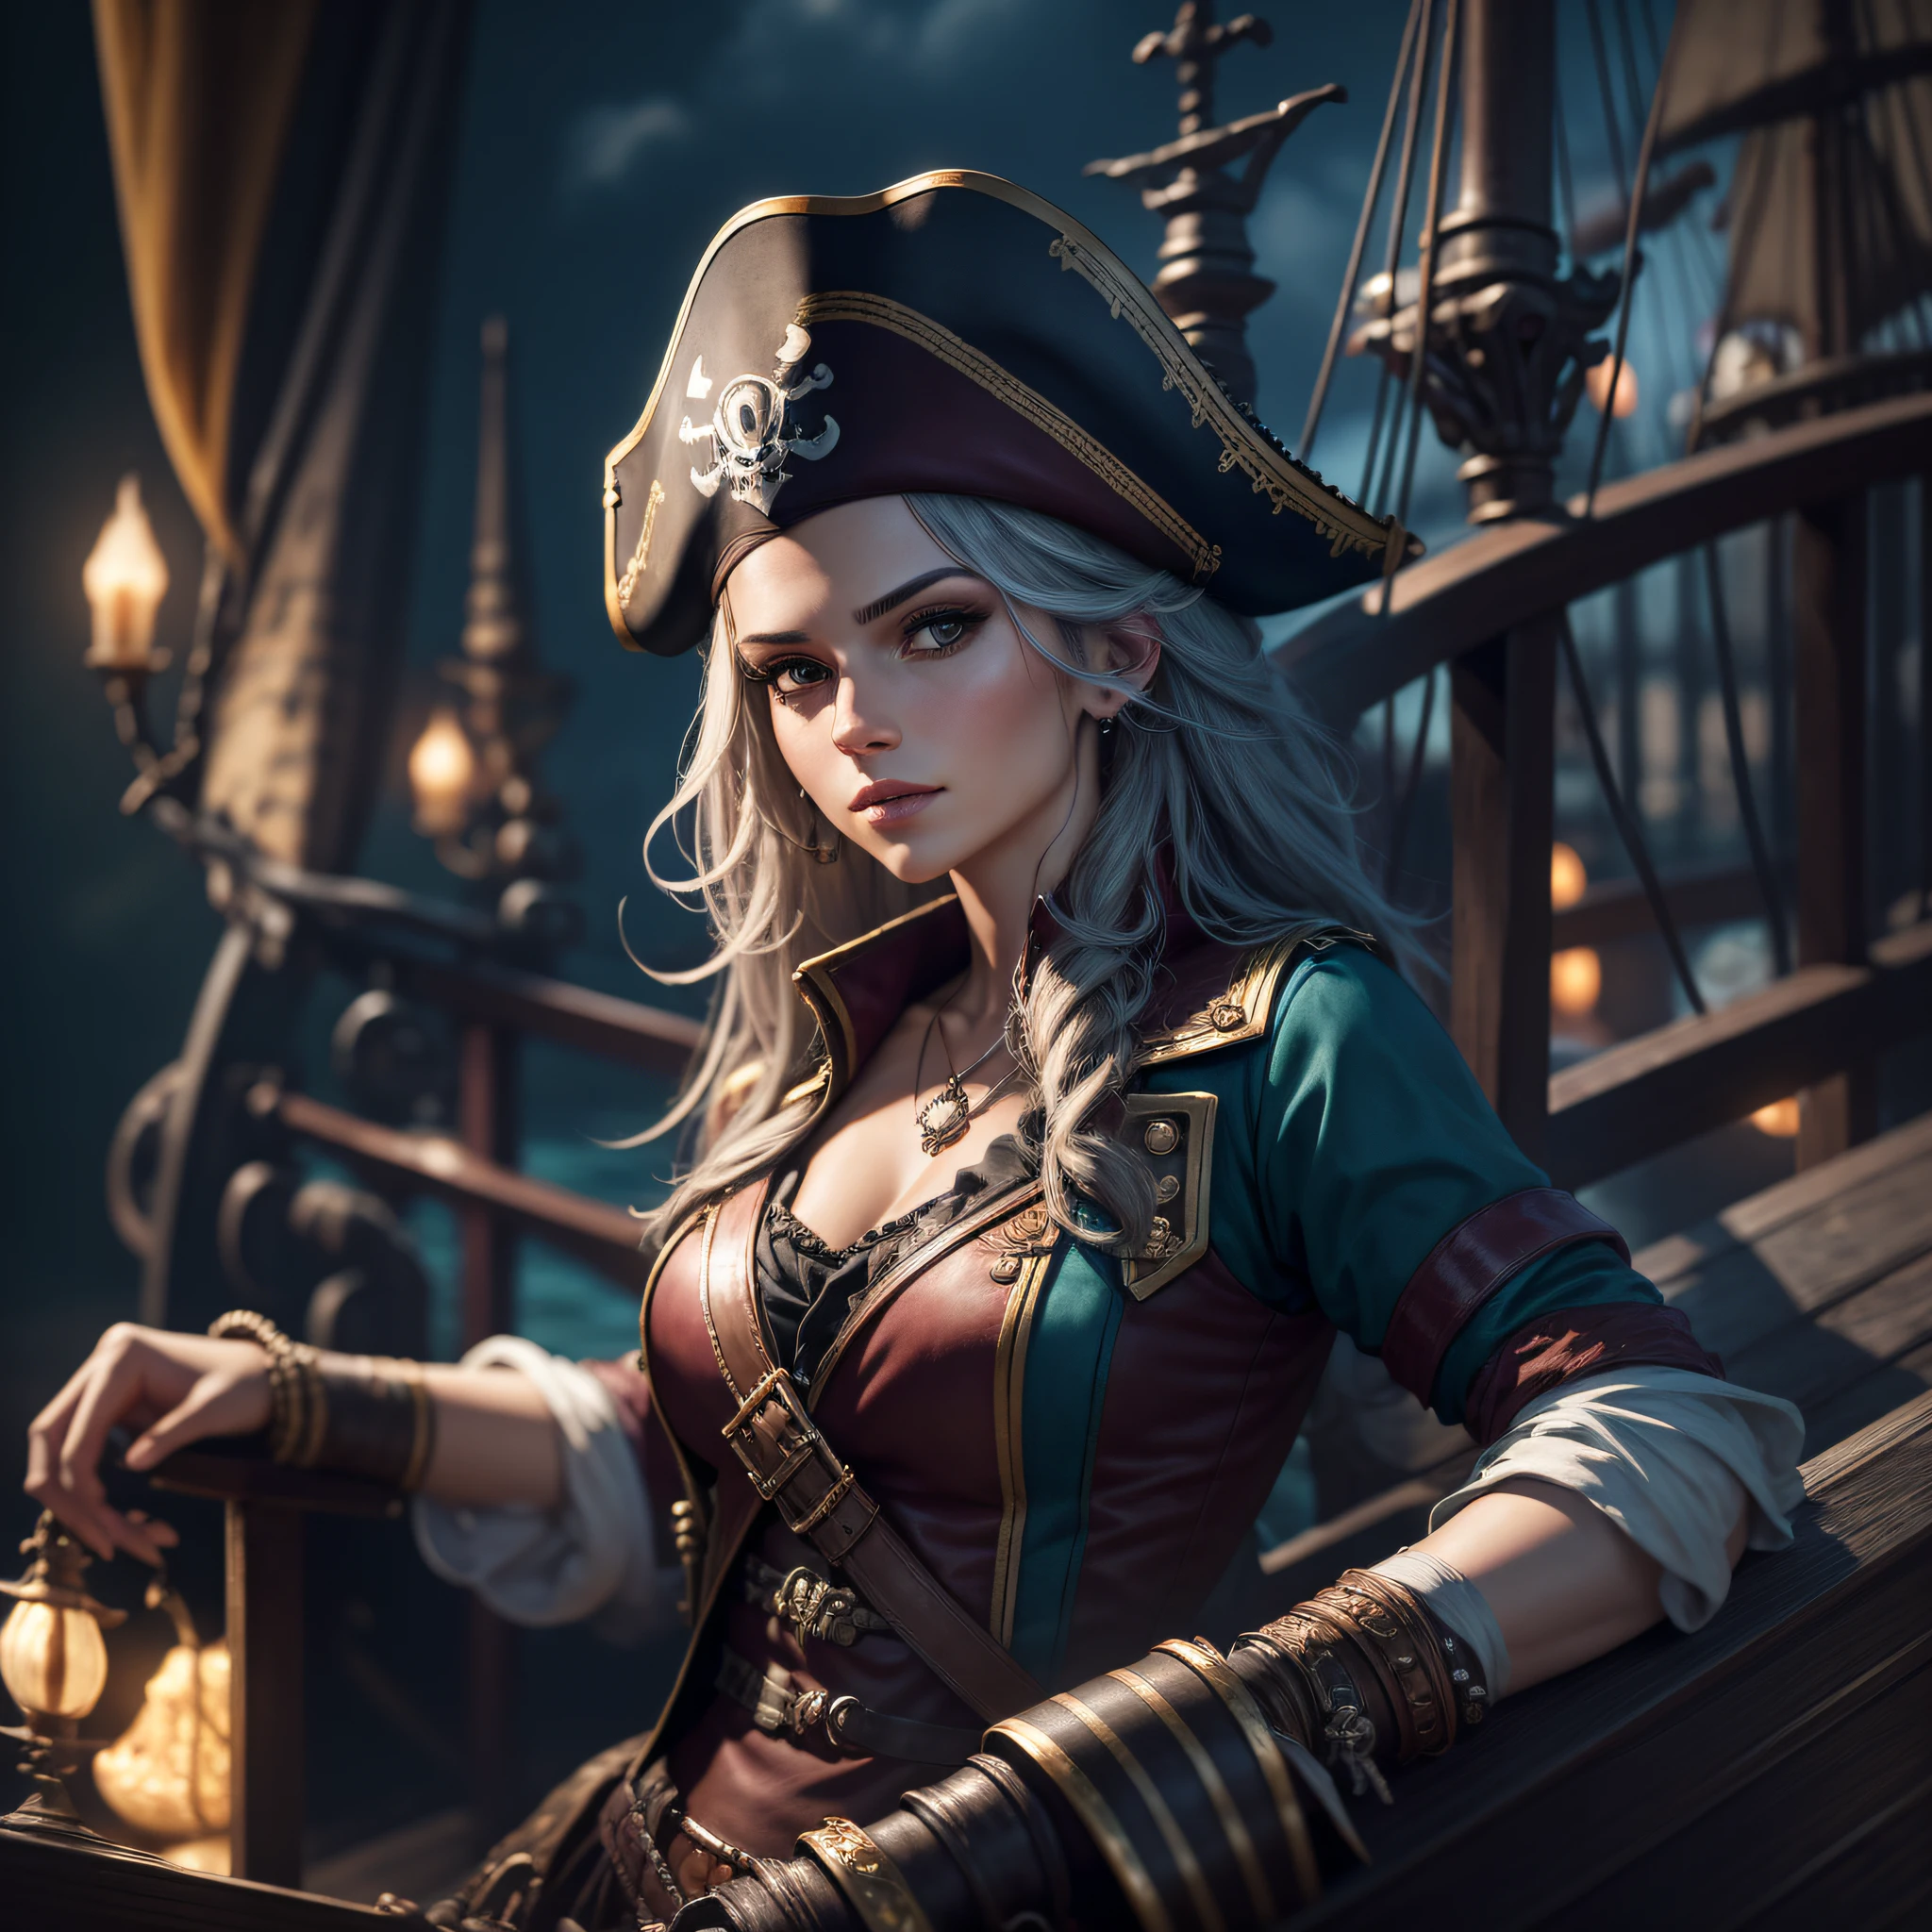 "Híper realista, mejor calidad, ultra detallado, Fondo de pantalla CG unidad 8K, retrato de una hermosa, Capitana Pirata, en su barco pirata, acompañada por su tripulación de piratas." --auto --s2